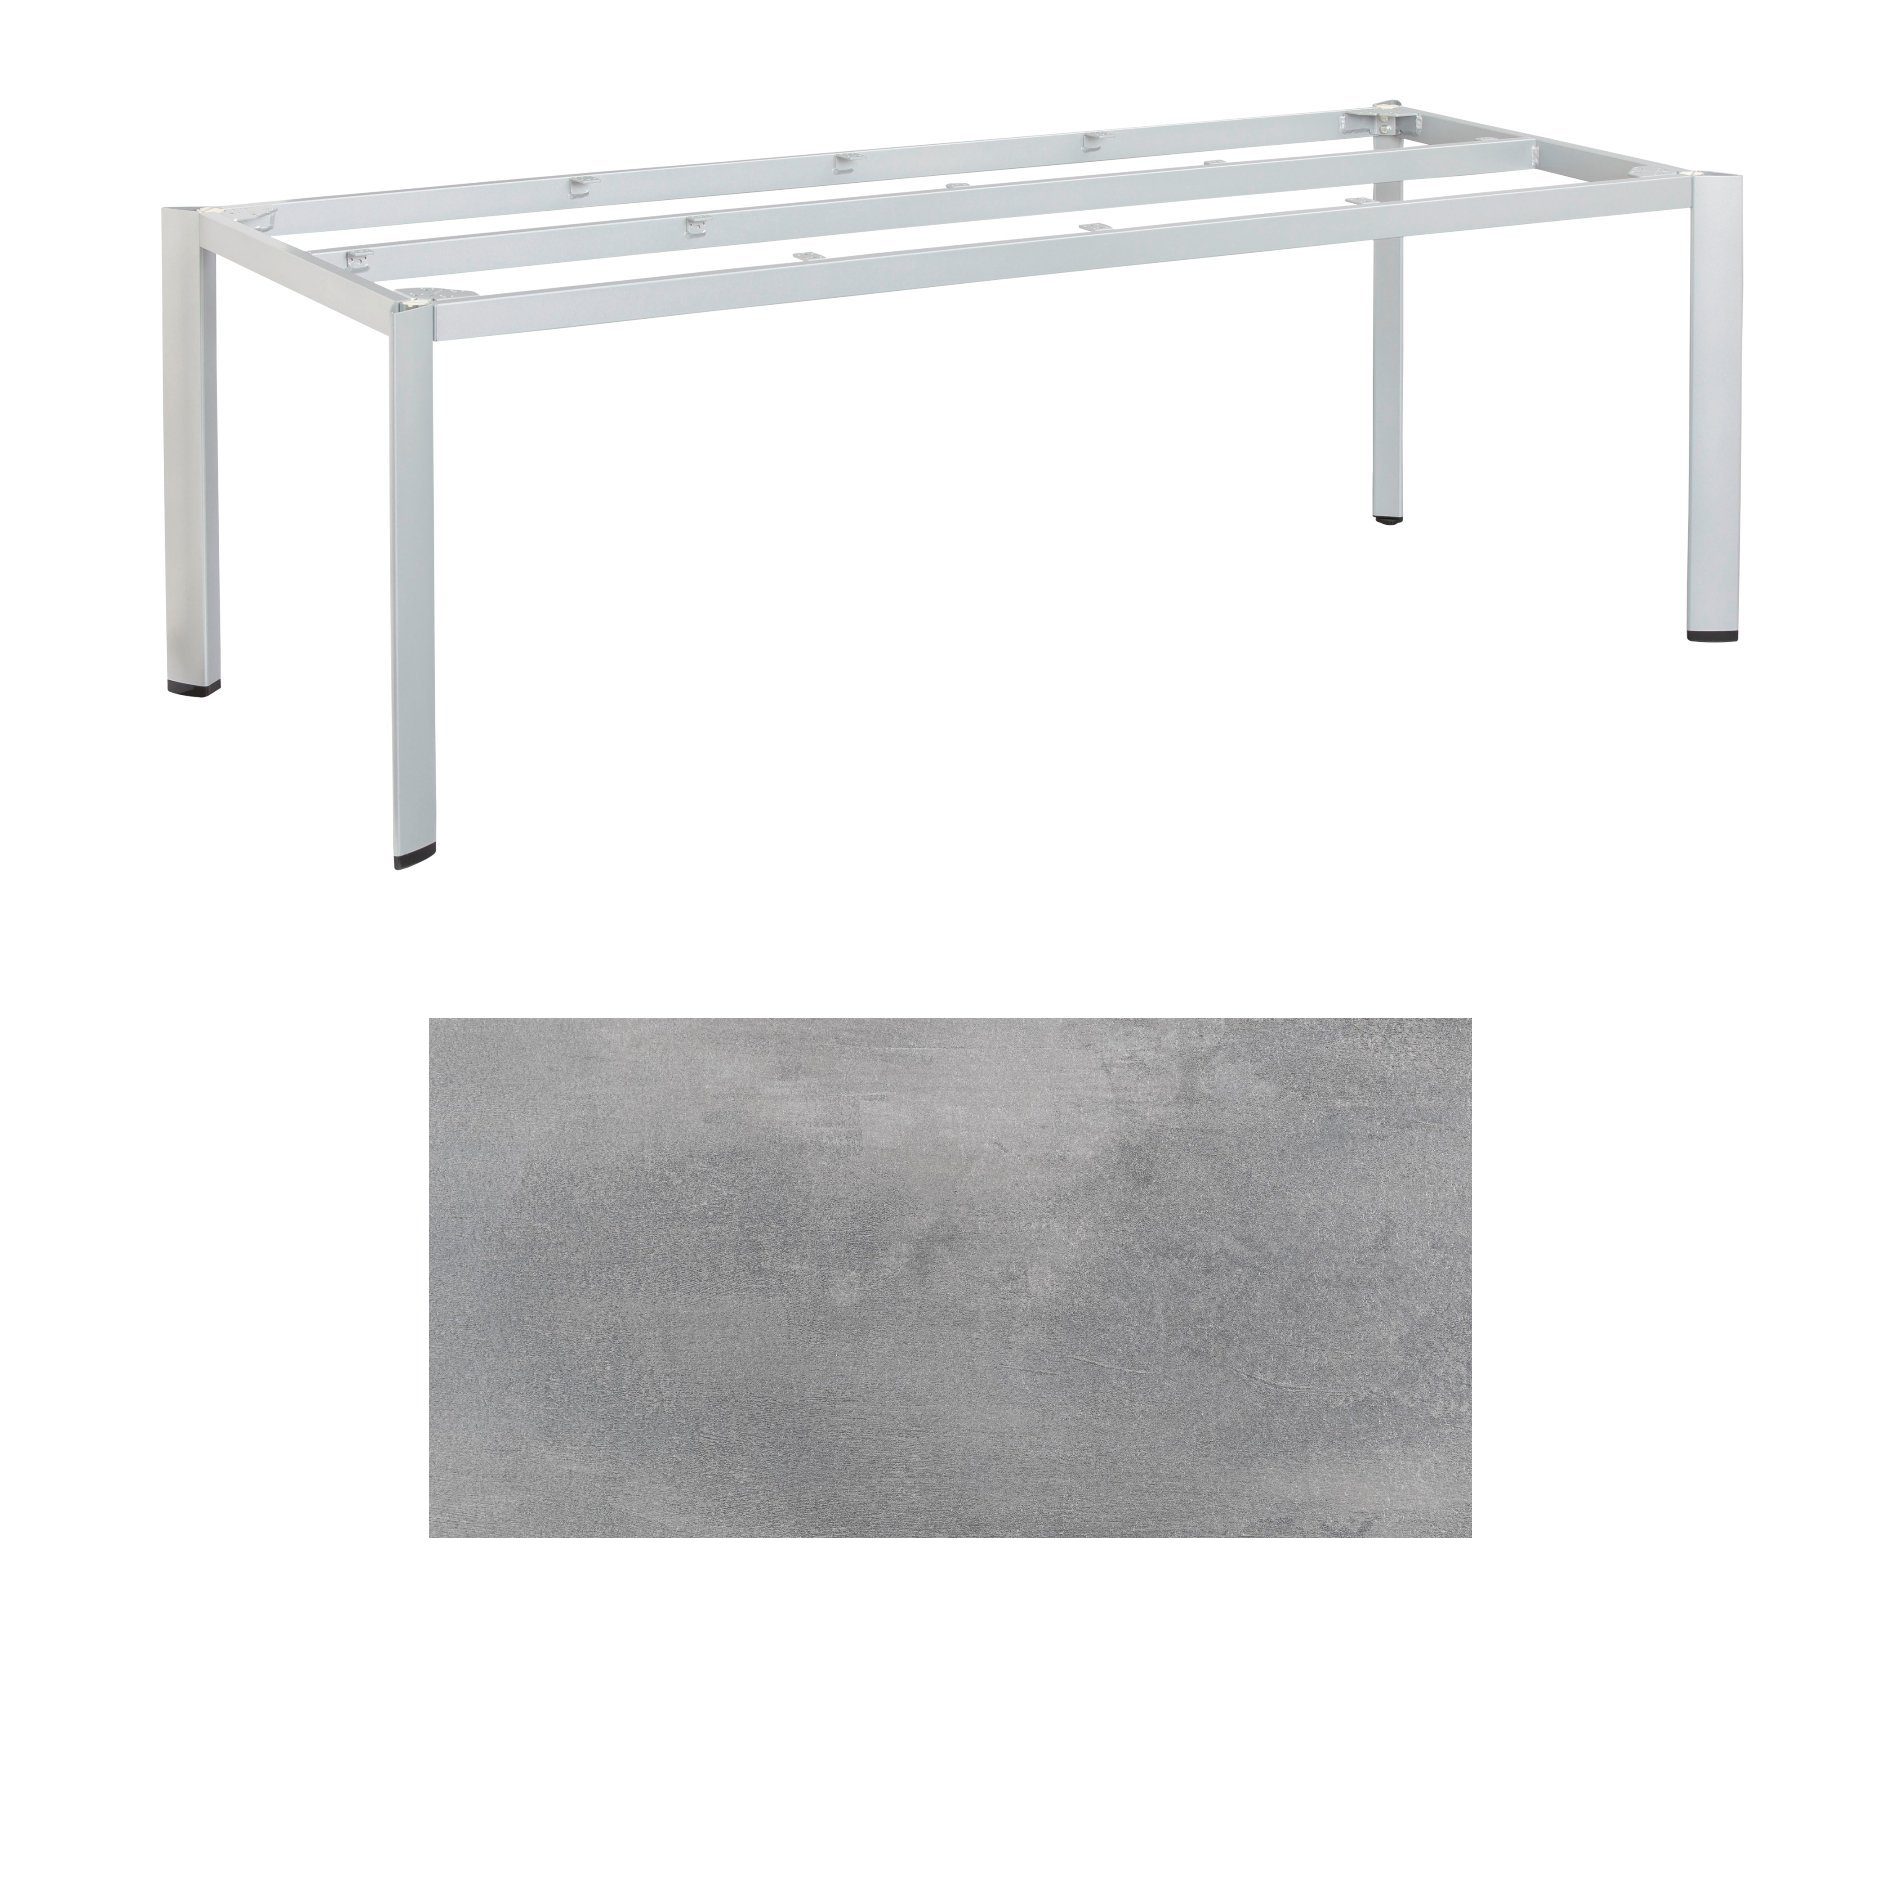 Kettler "Edge" Gartentisch, Gestell Aluminium silber, Tischplatte HPL silber-grau, 220x95 cm